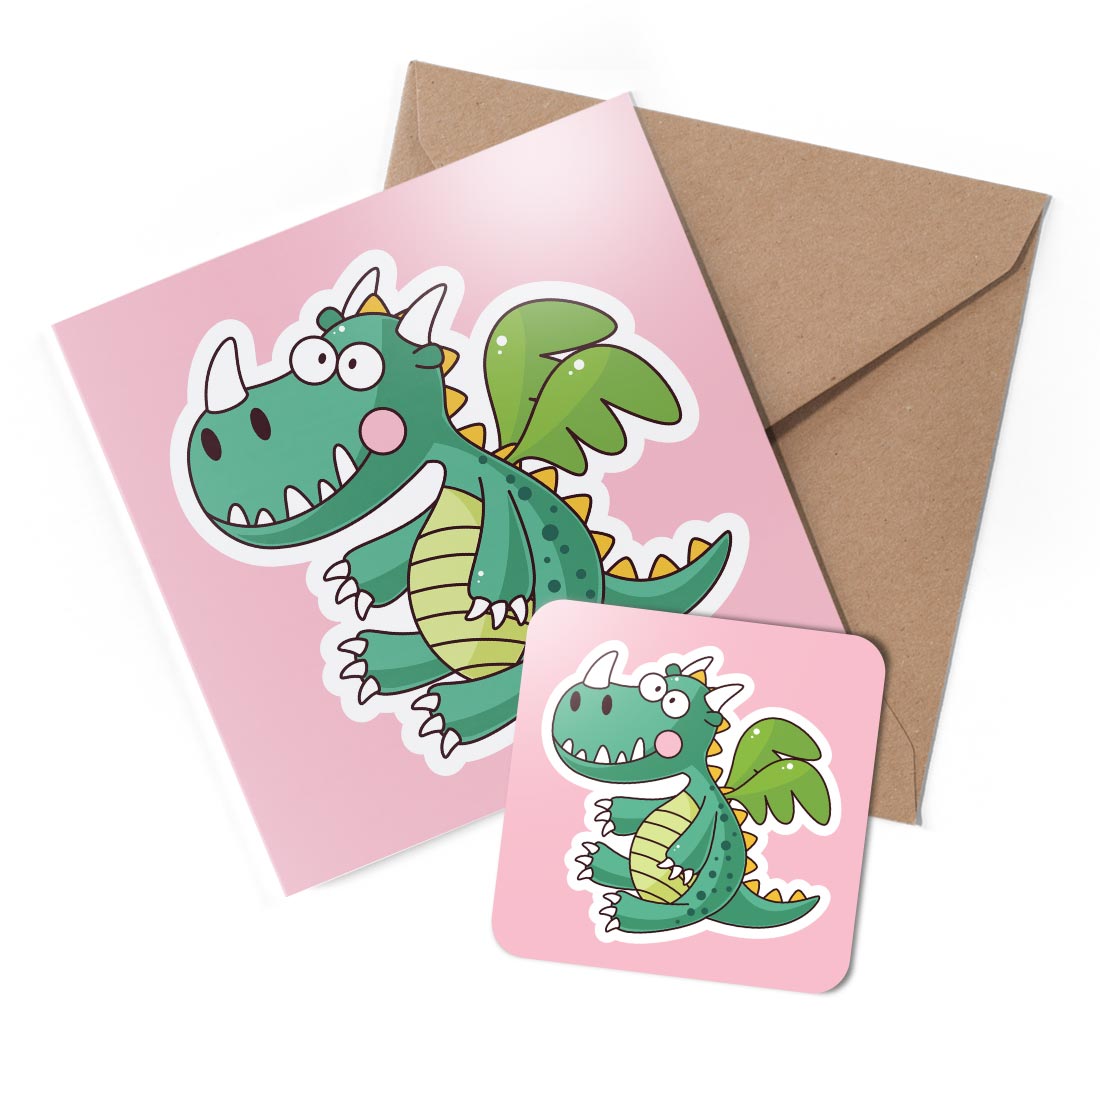 1 x Greeting Card & Coaster Set - Spinosaurus Dinosaur Drawing #59701